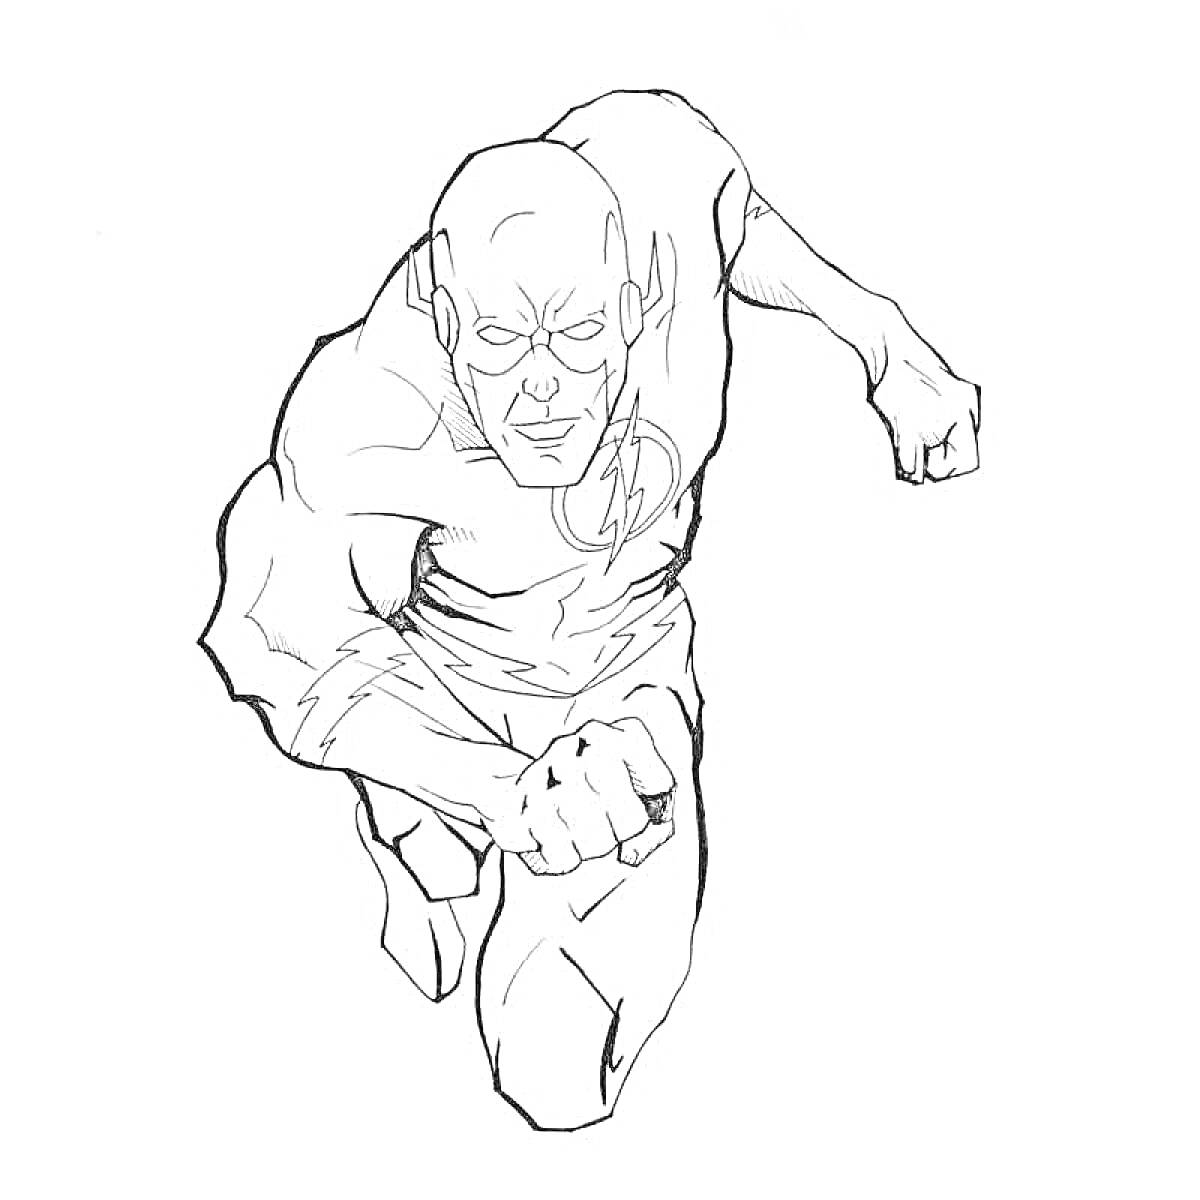 Раскраска Супергерой в костюме с молнией, бегущий вперед с поднятым кулаком.